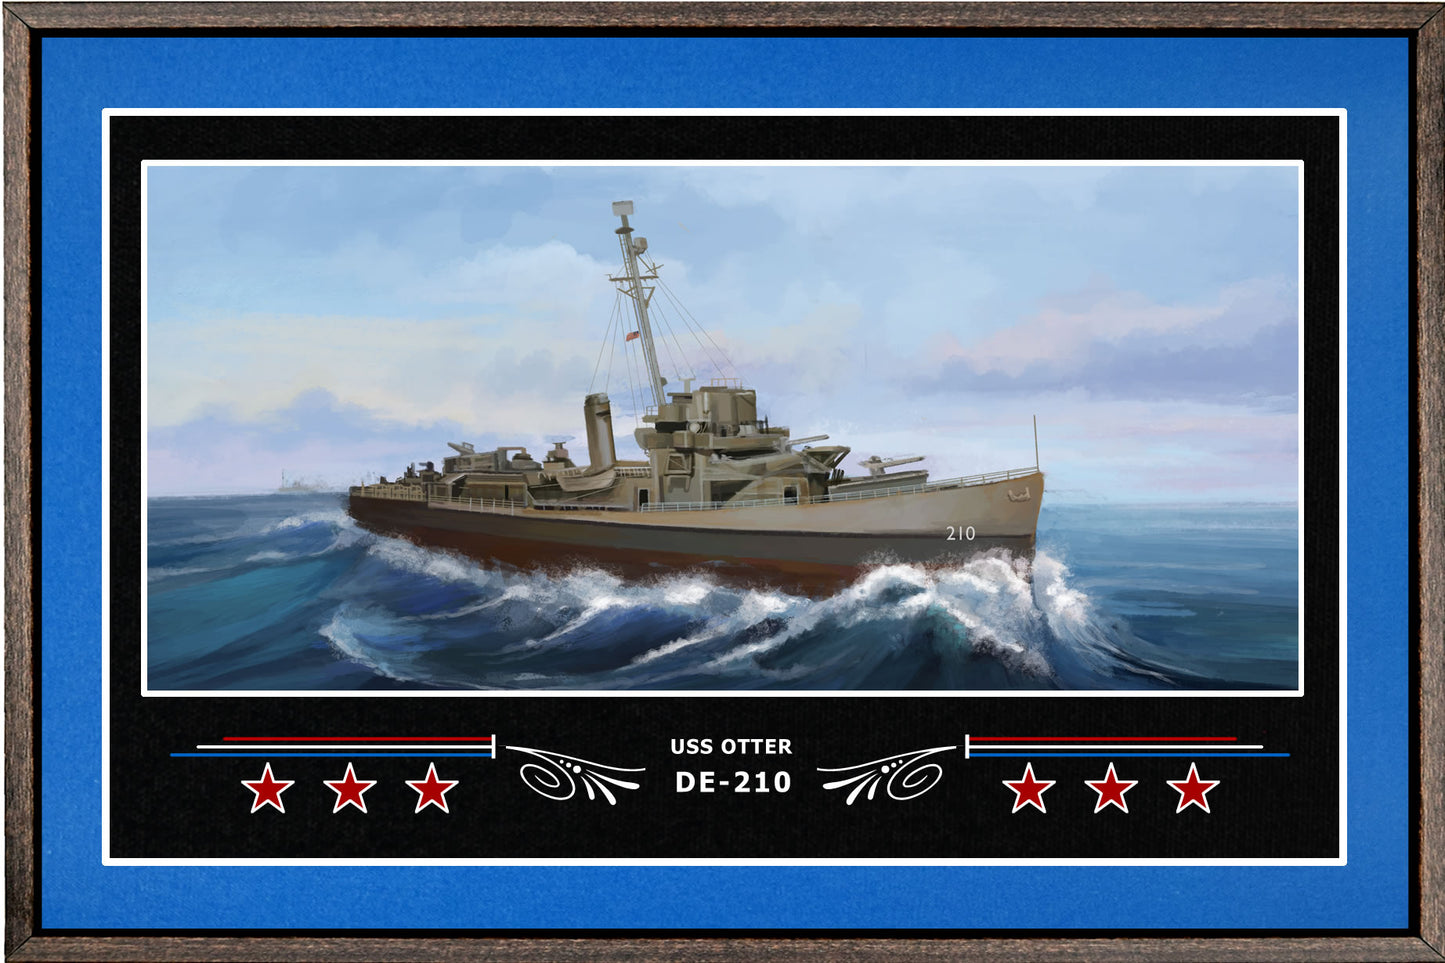 USS OTTER DE 210 BOX FRAMED CANVAS ART BLUE